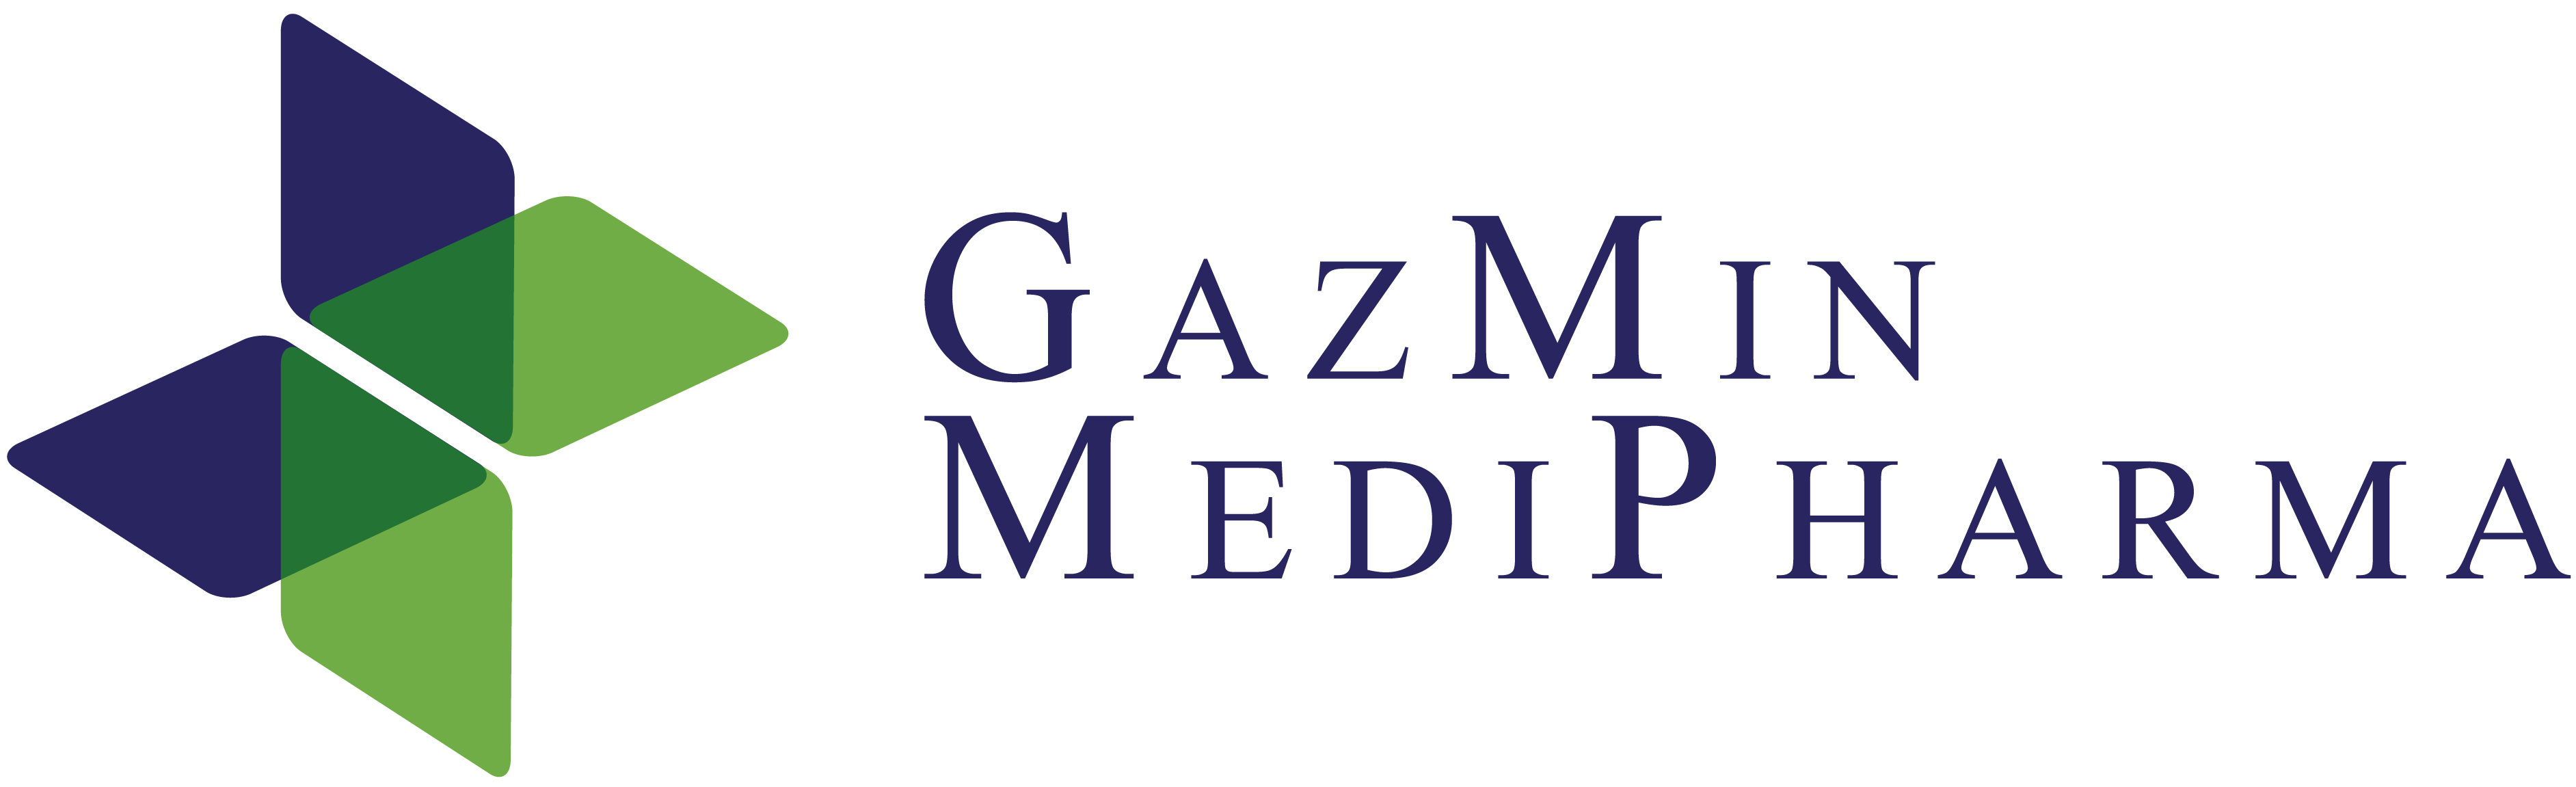 Gazmin